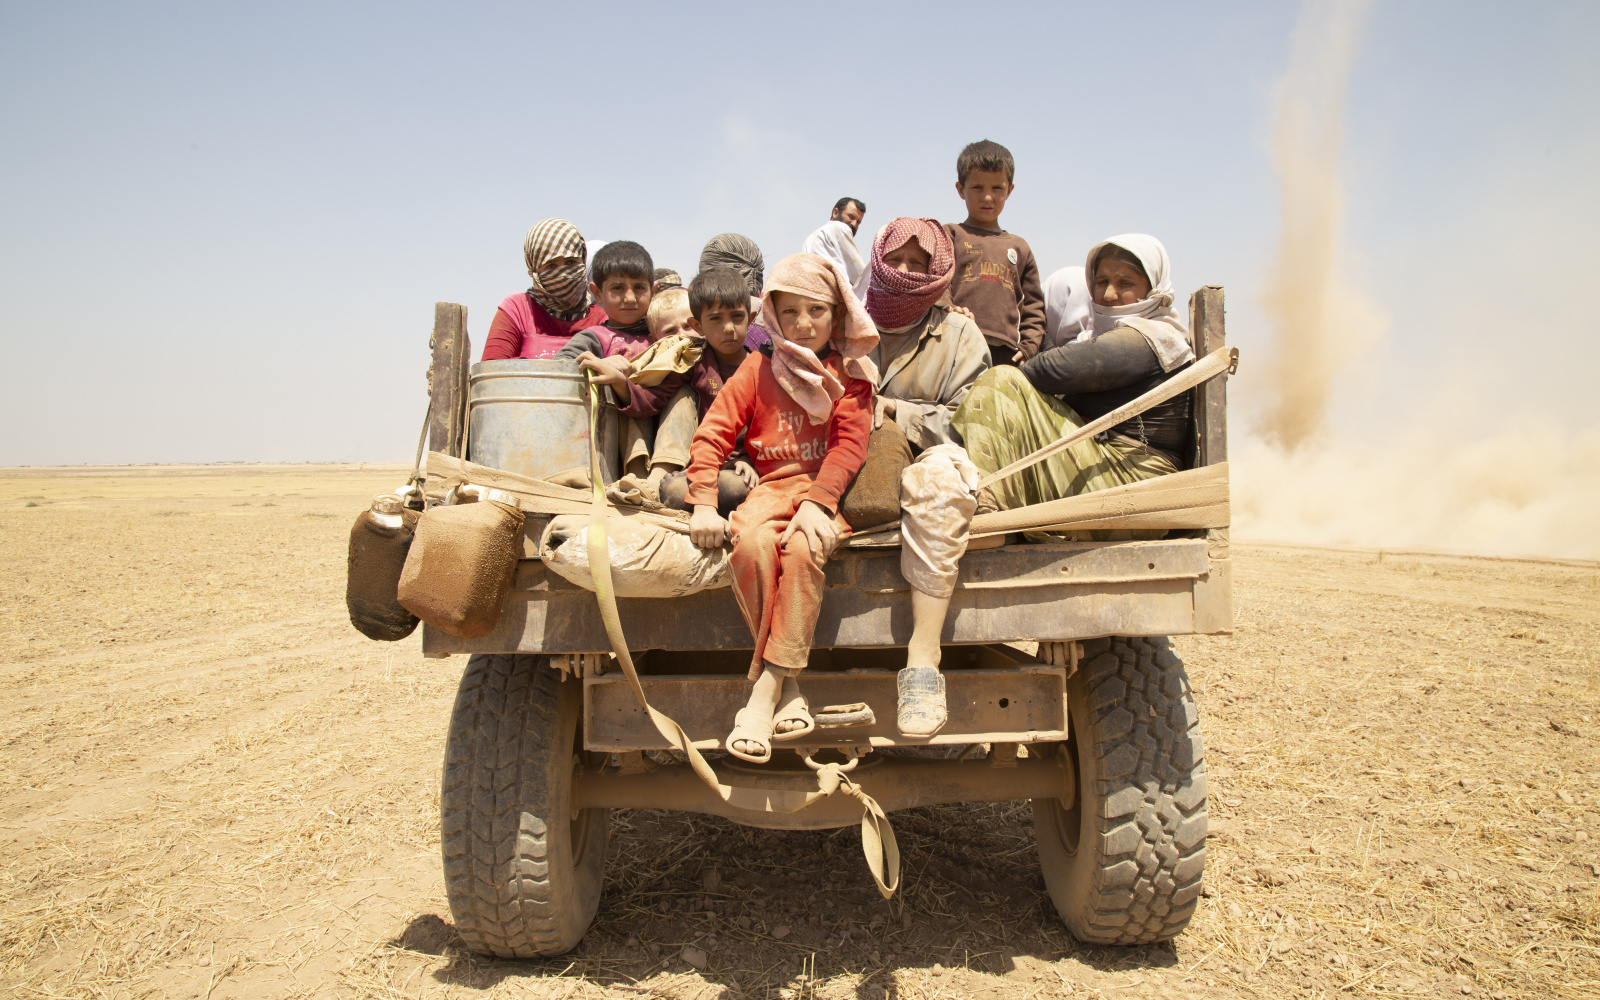 Zu sehen ist sind viele geflüchtete Kinder in der Wüste auf einem LKW.